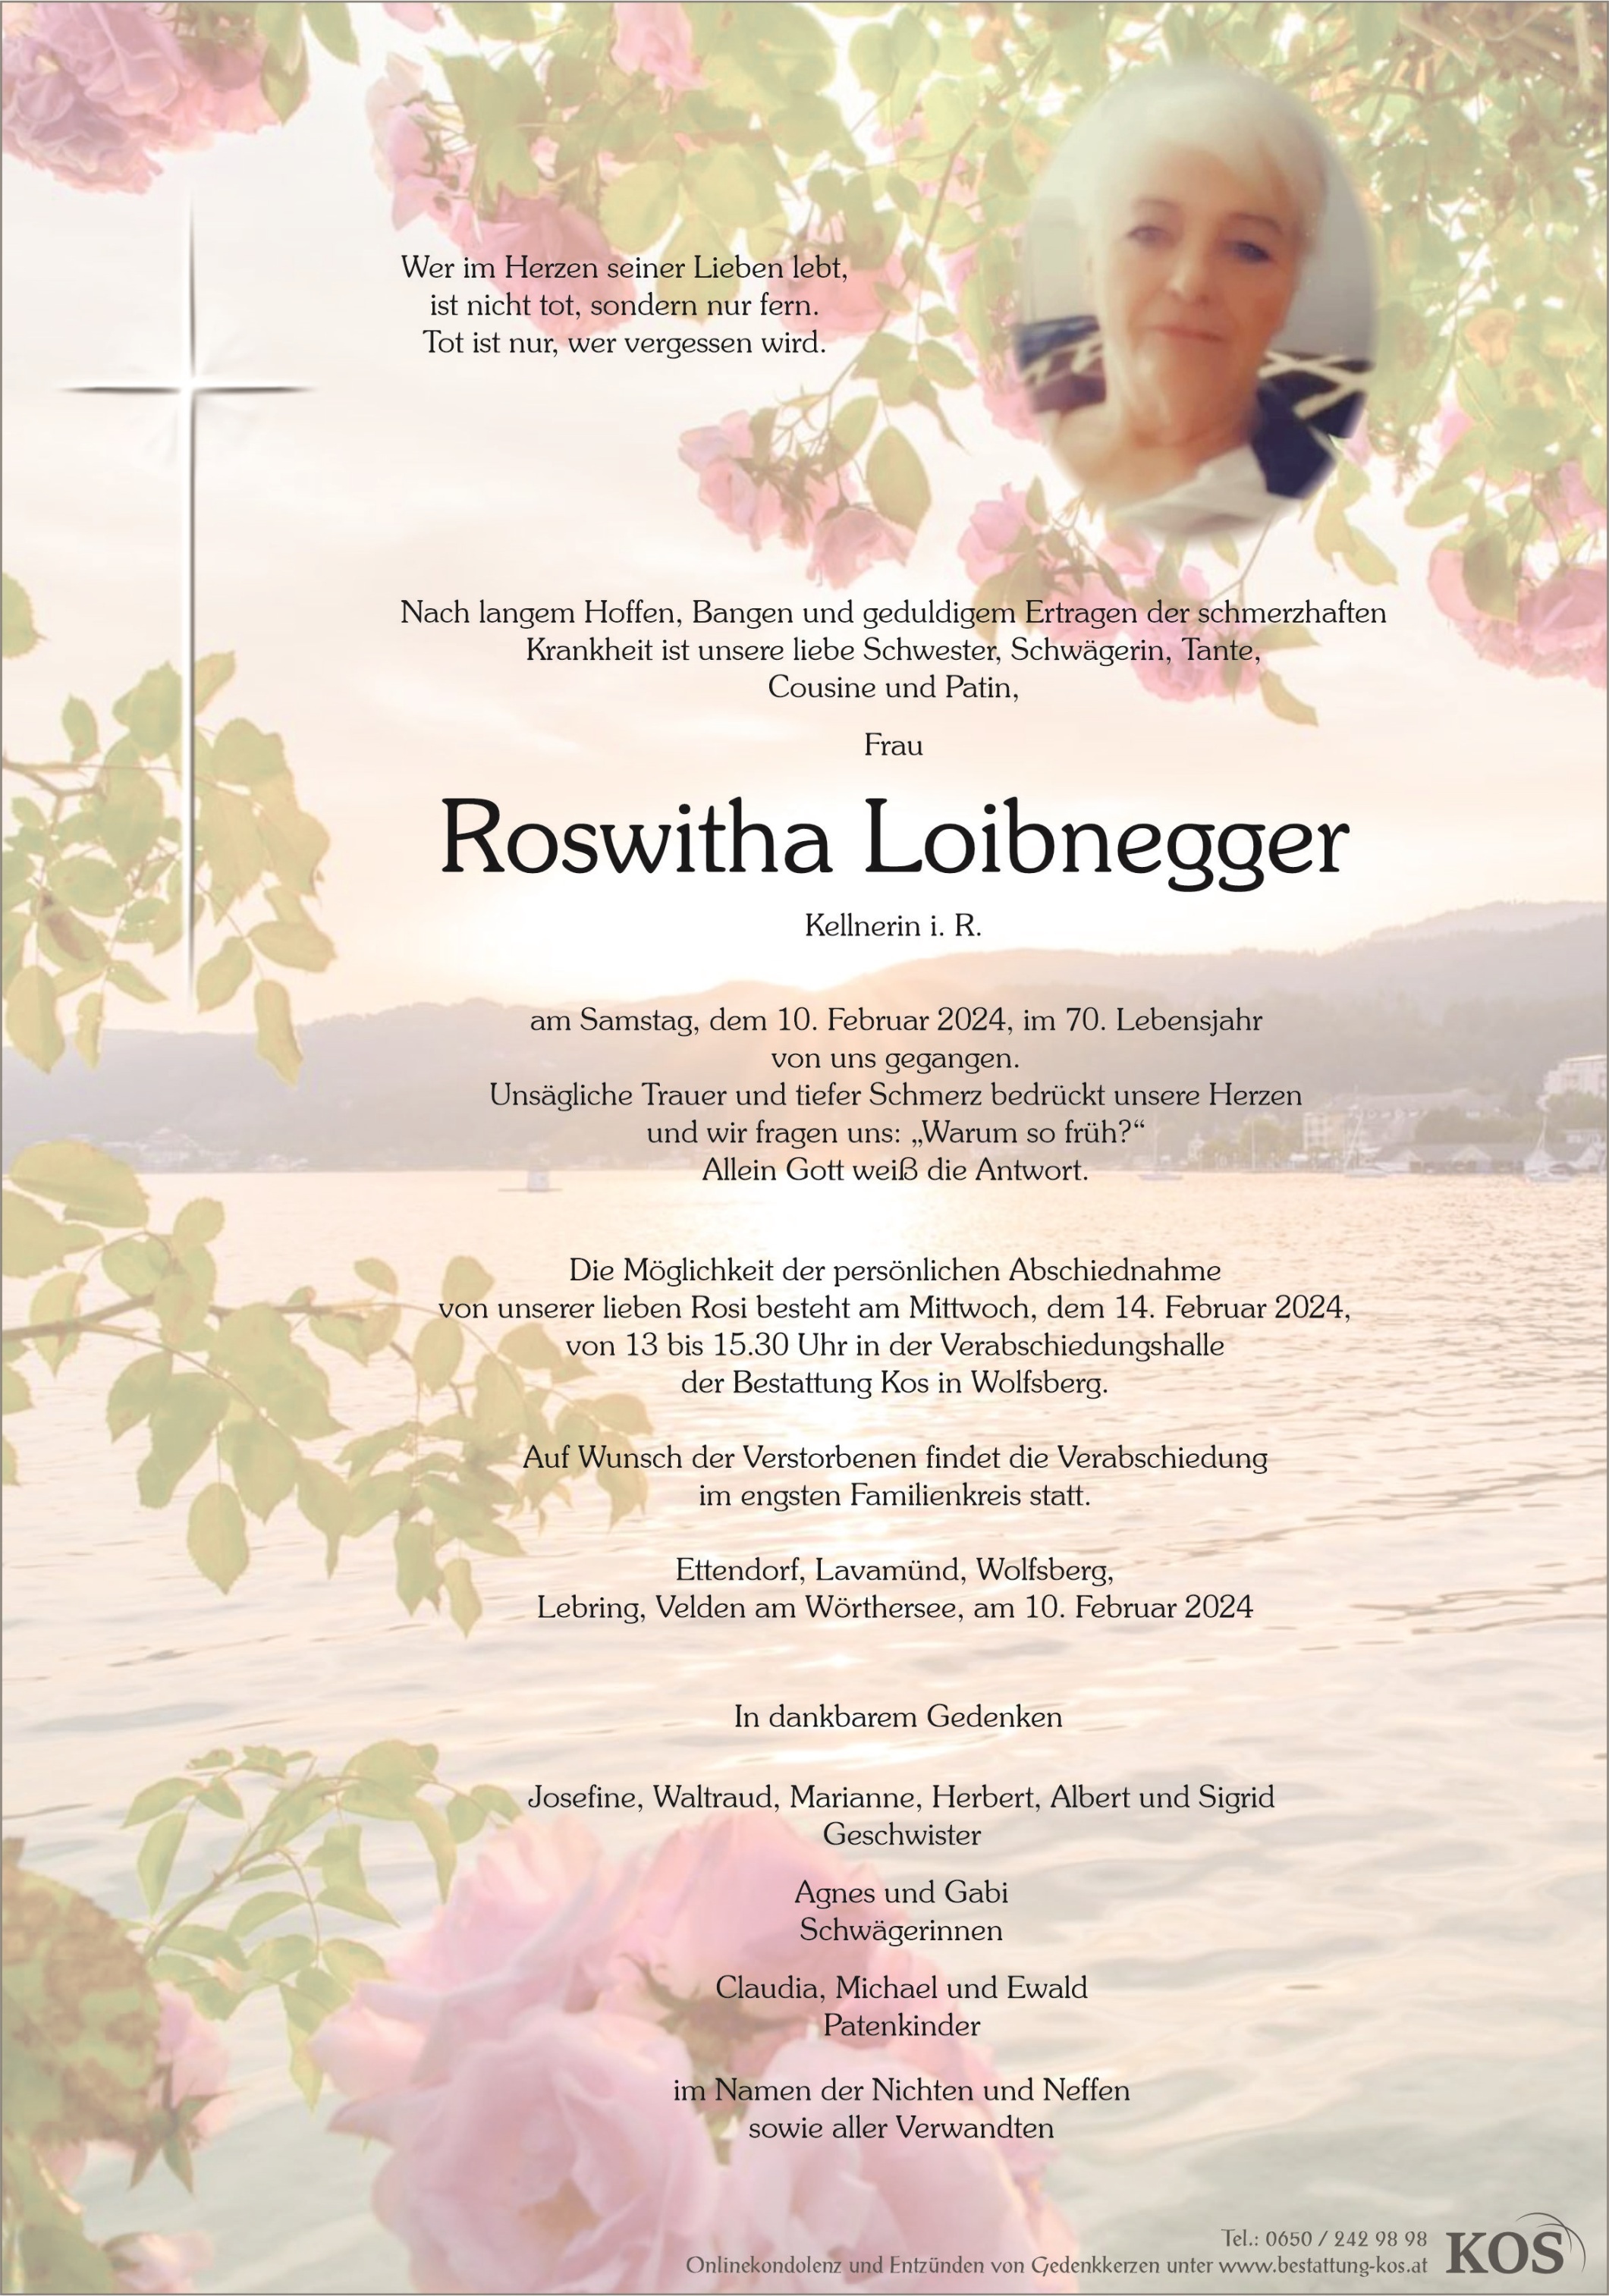 Roswitha Loibnegger